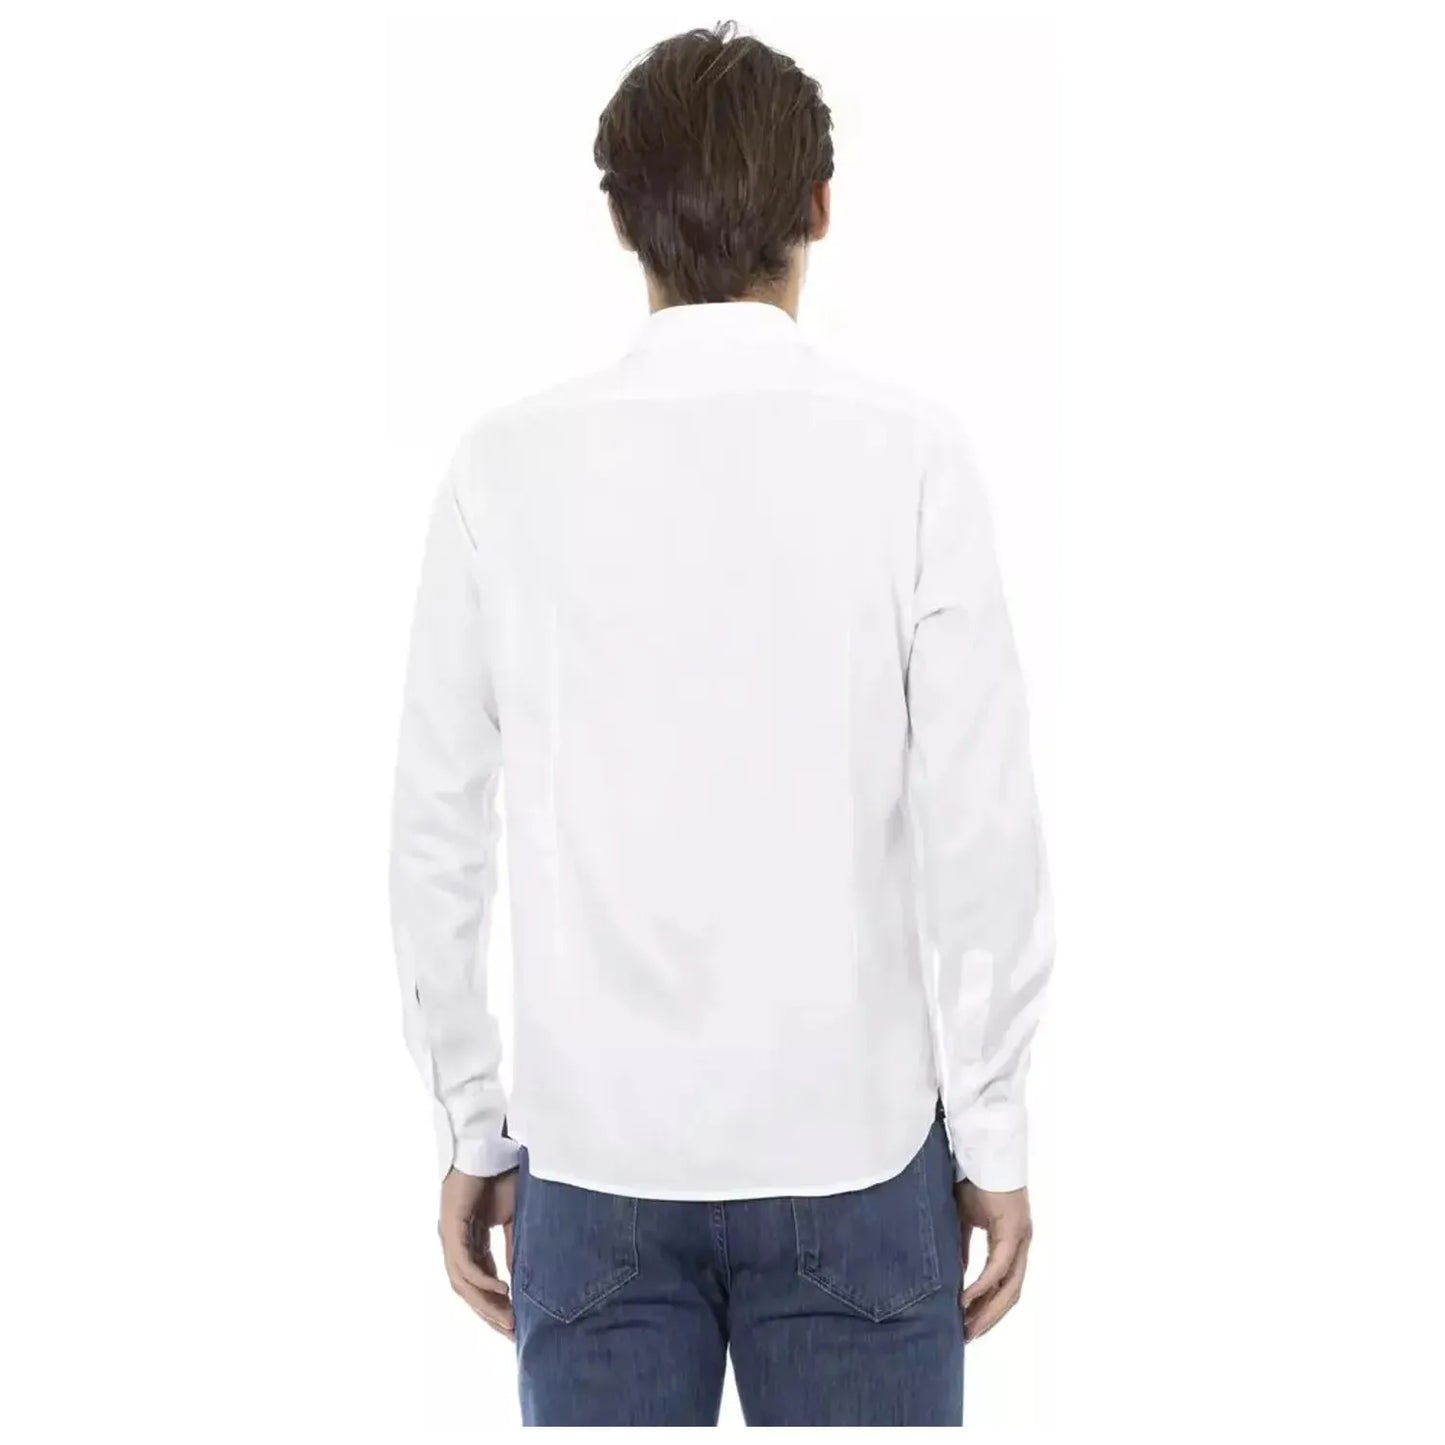 Baldinini Trend Elegant Slim Fit White Cotton Shirt white-viscose-shirt